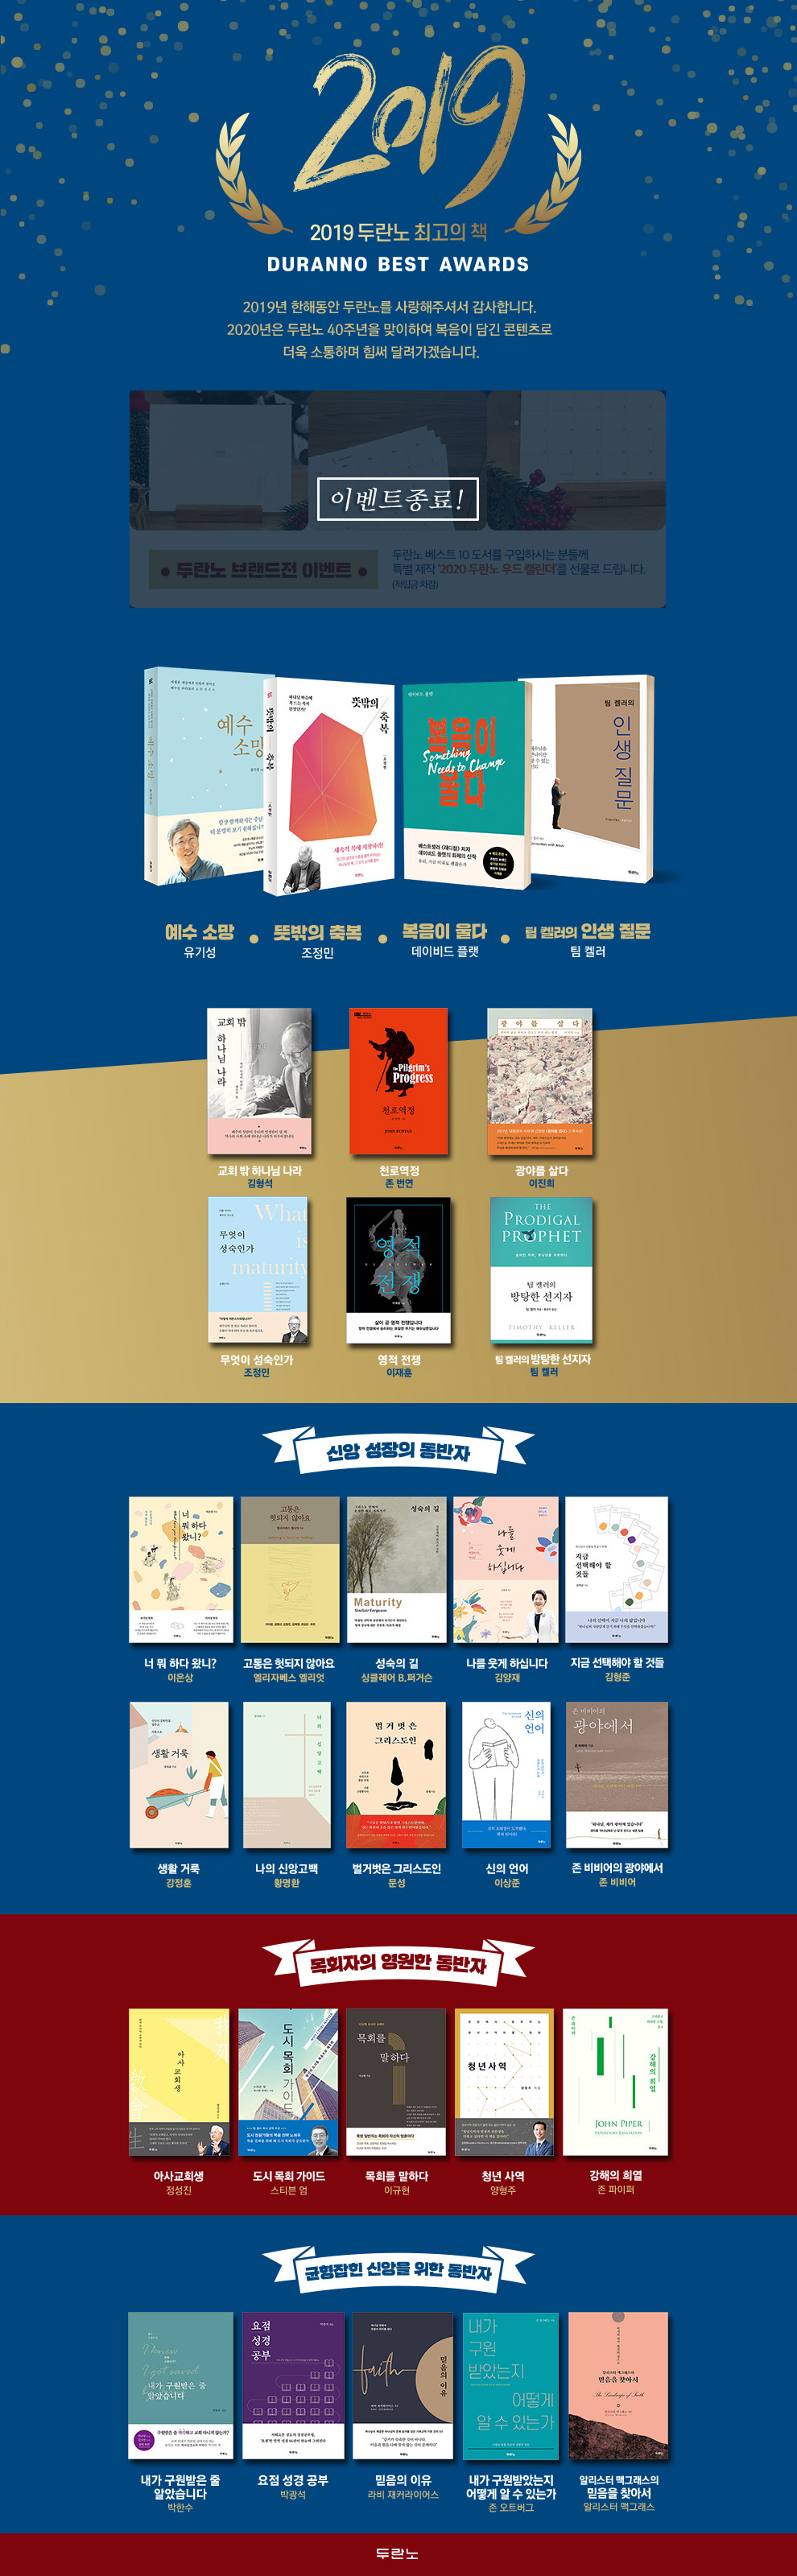 2019 두란노 최고의 책 두란노 브랜드전 이벤트